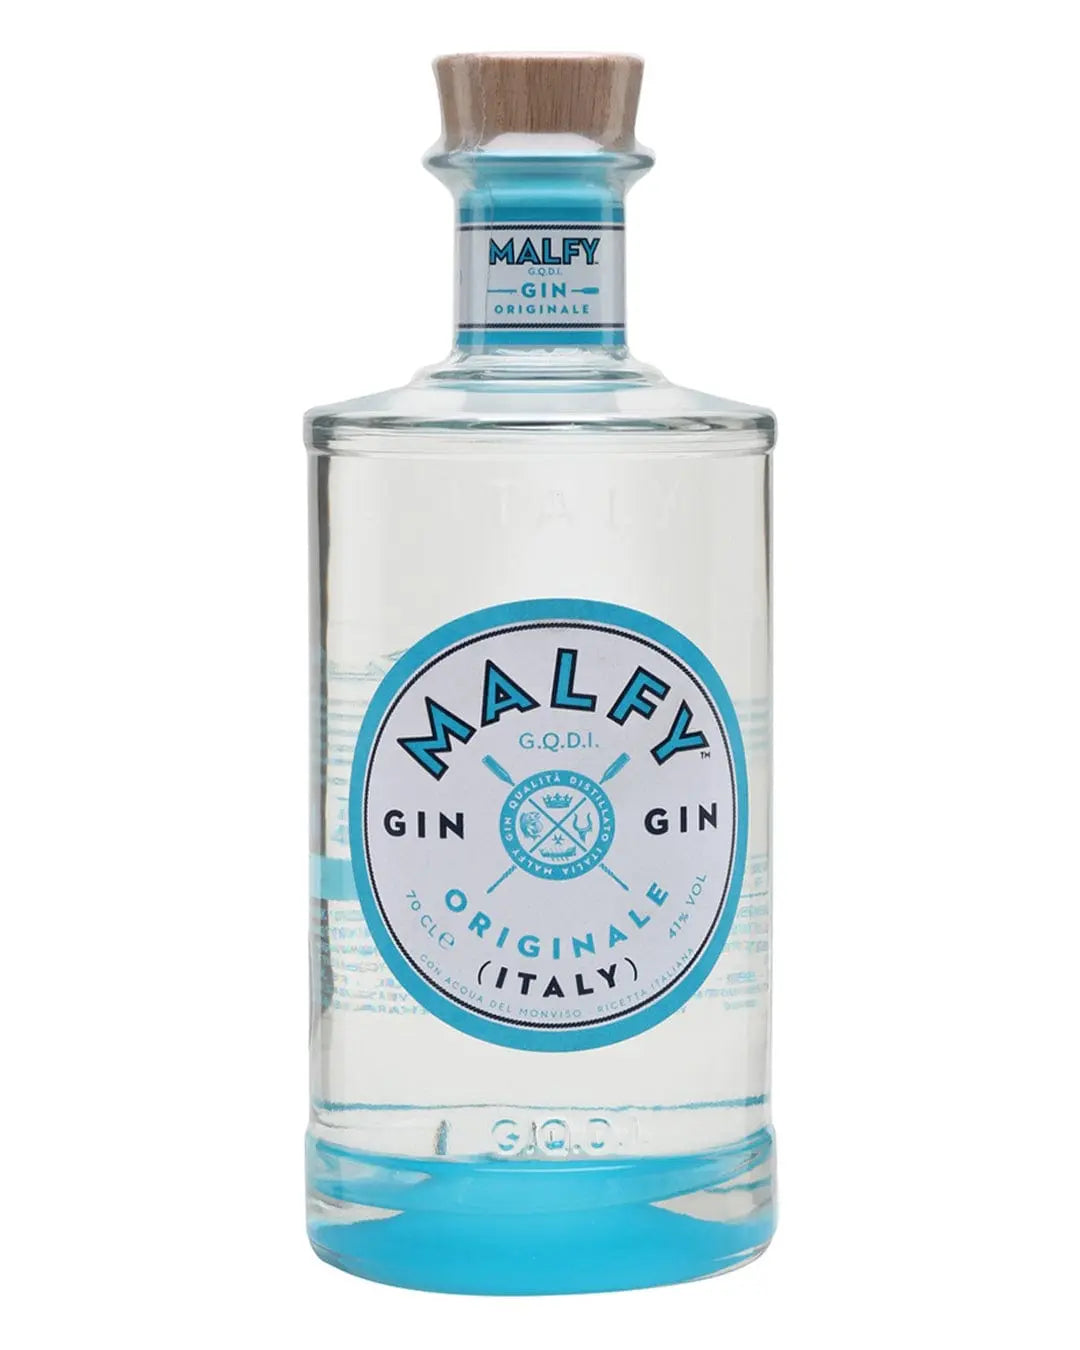 Malfy Gin Originale, 70 cl Gin 853222006189